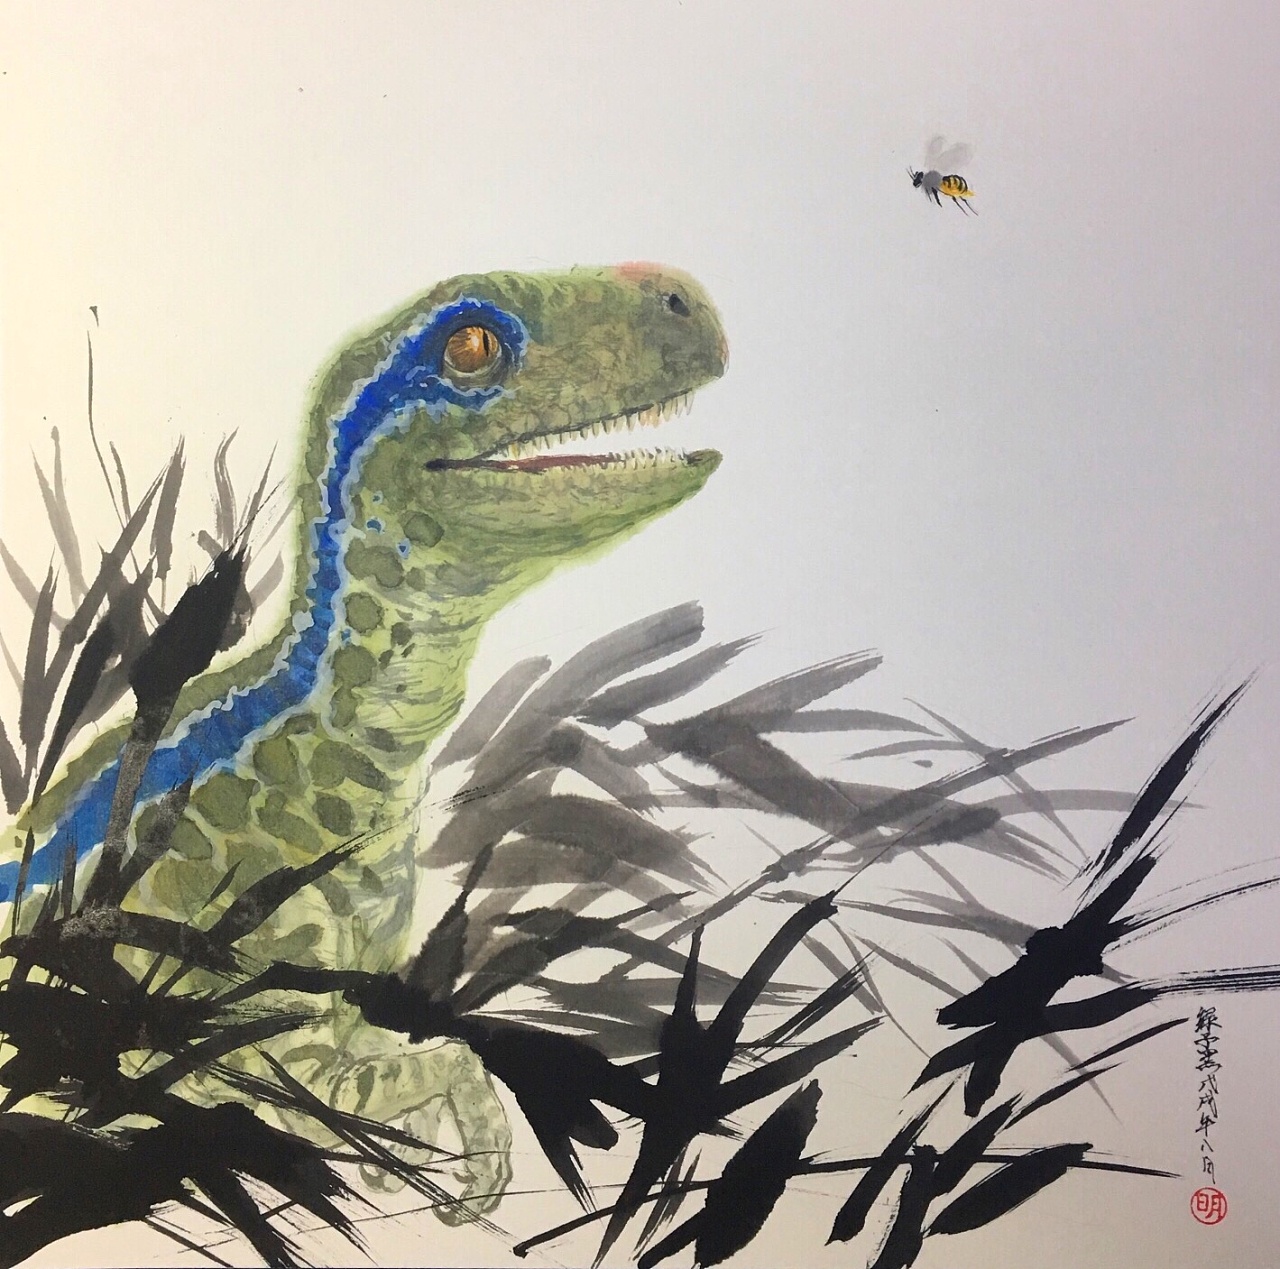 恐龙儿童画简单-图库-五毛网